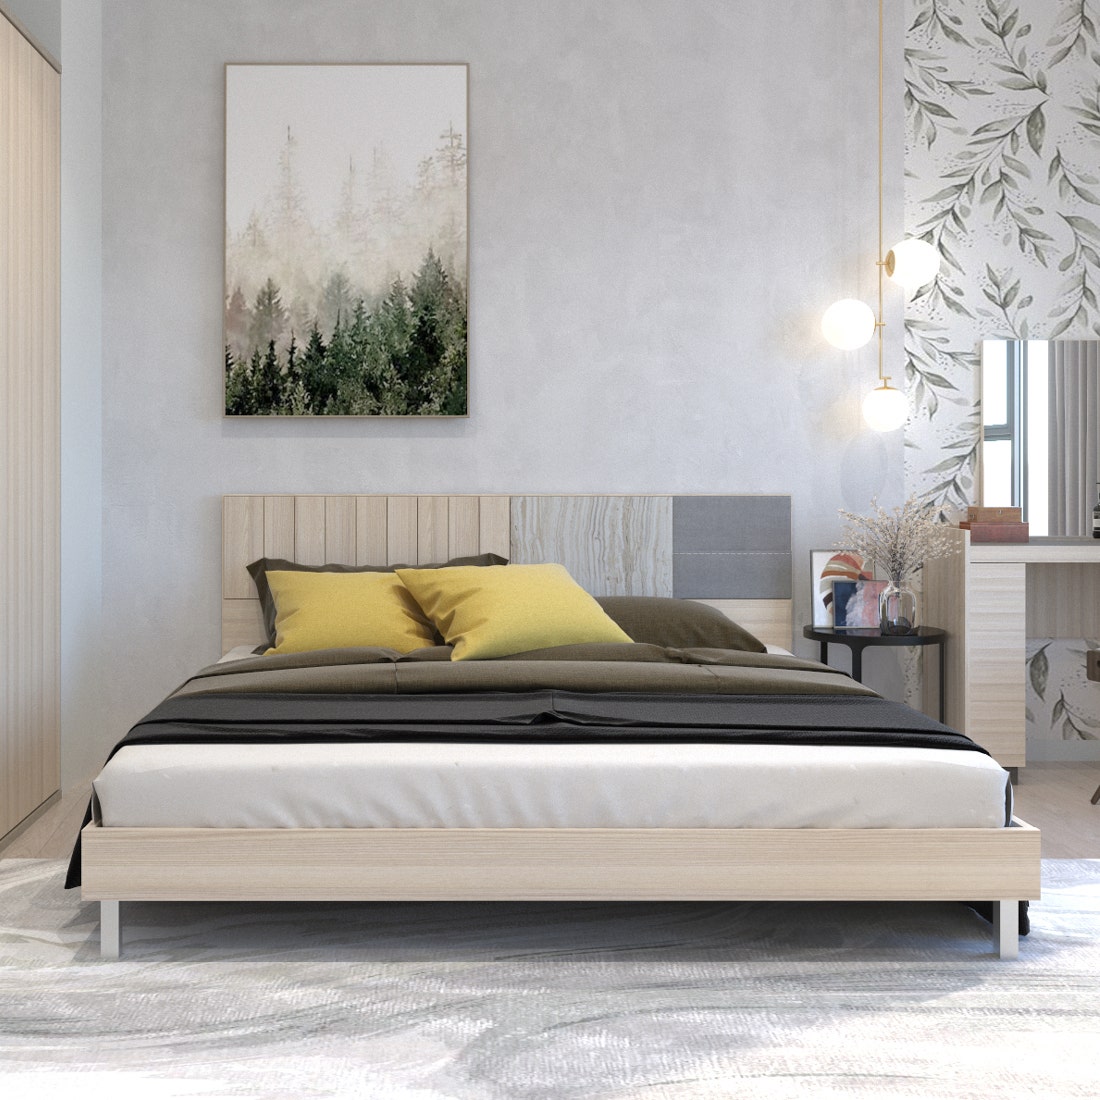 เตียงนอน 5 ฟุต รุ่น Econi-B Premium สีไม้อ่อน 03